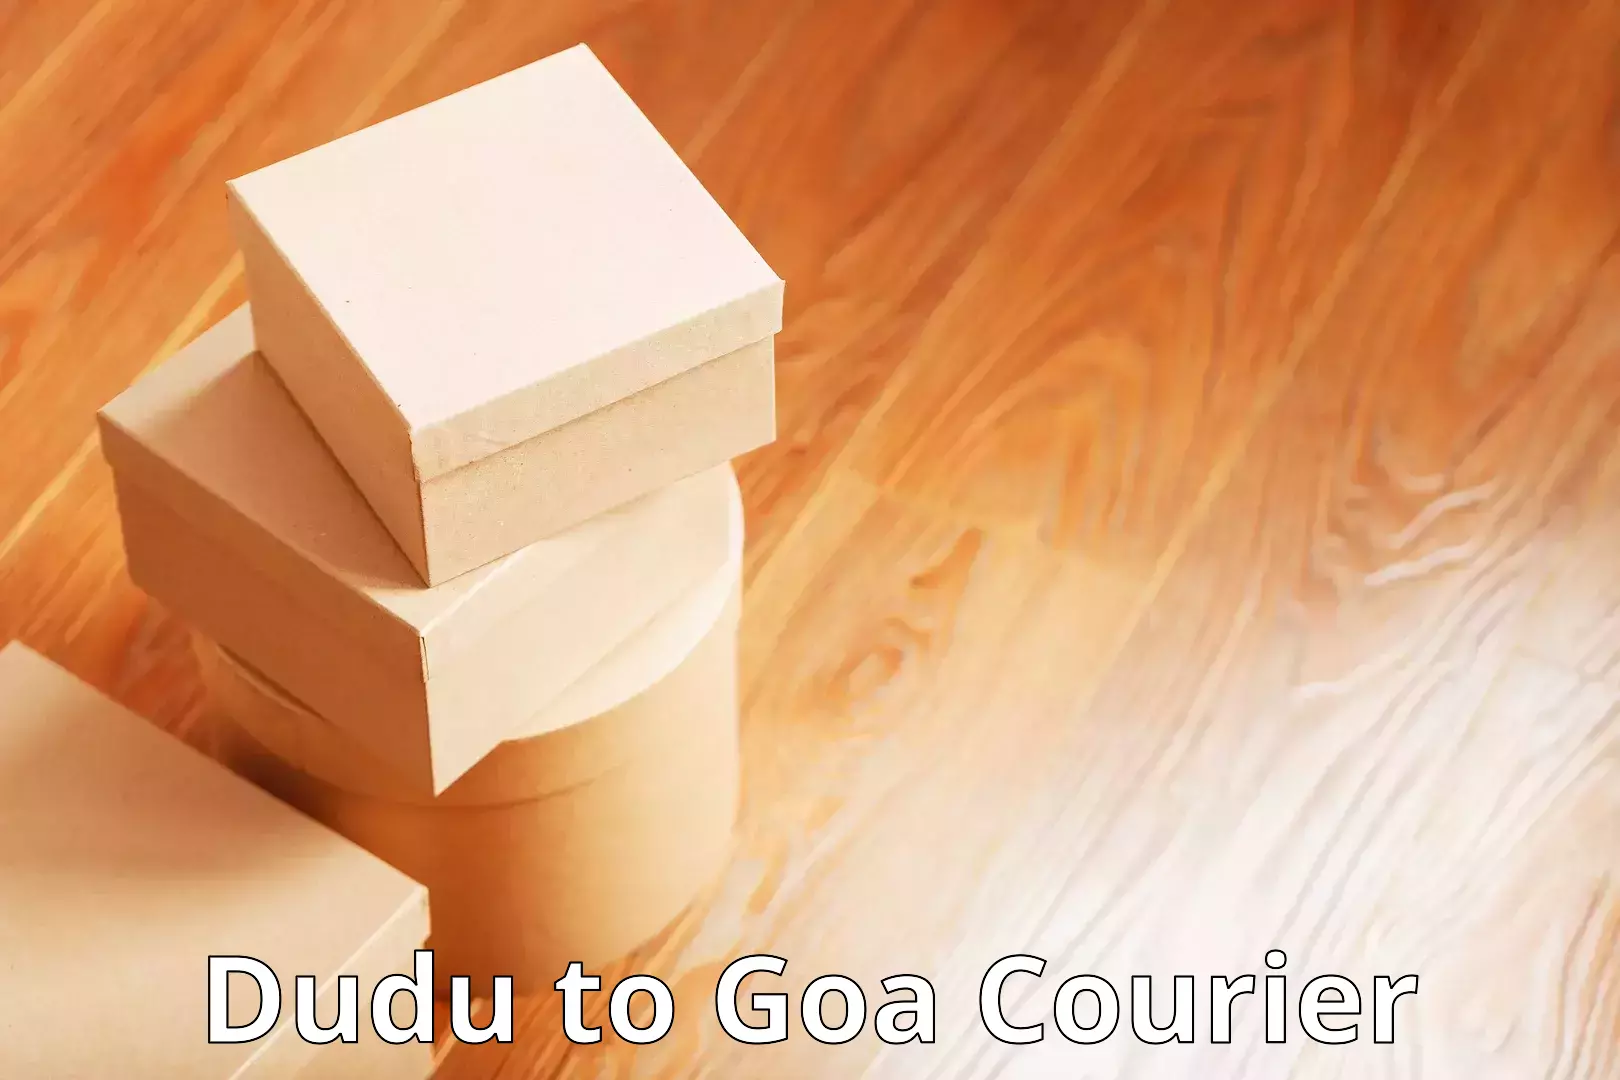 E-commerce fulfillment Dudu to Goa